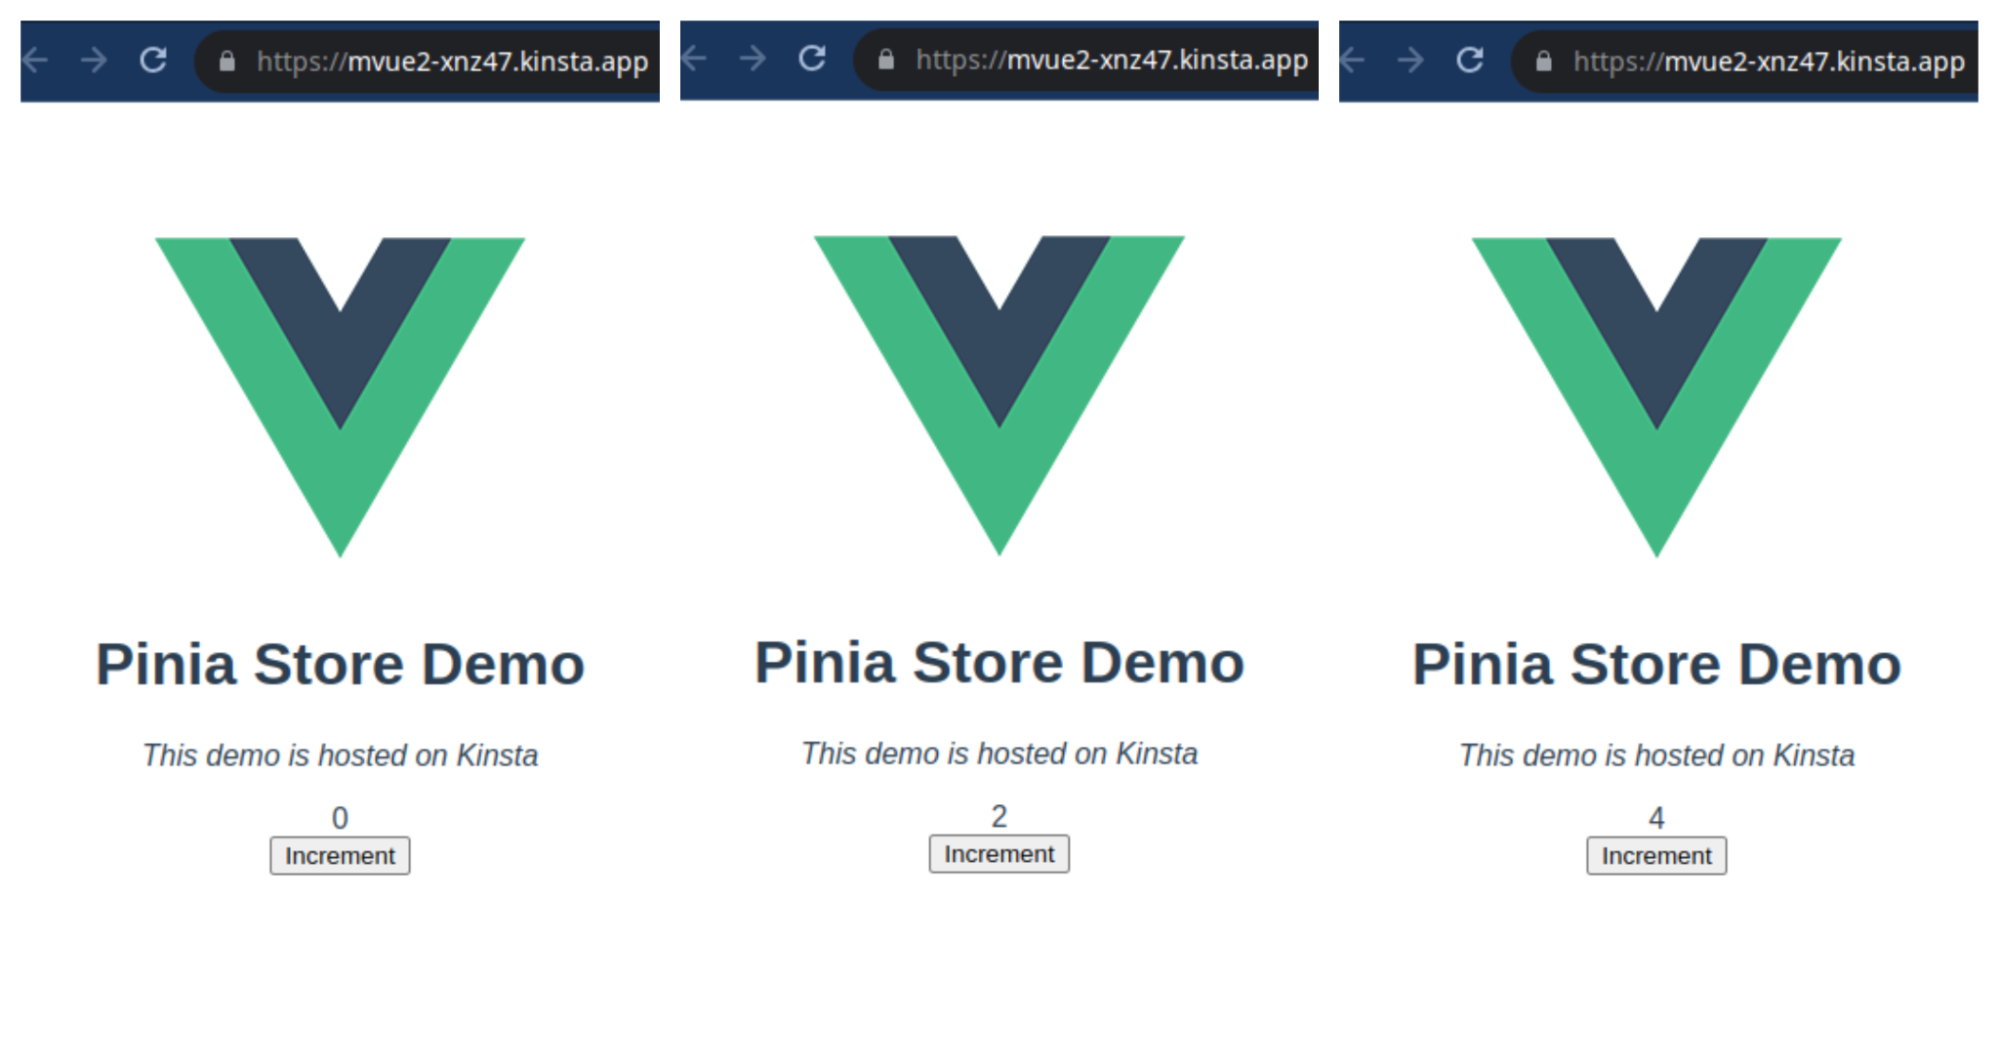 Schermata della landing page del Pinia Store Demo con diversi incrementi: 0, 2 e 4.